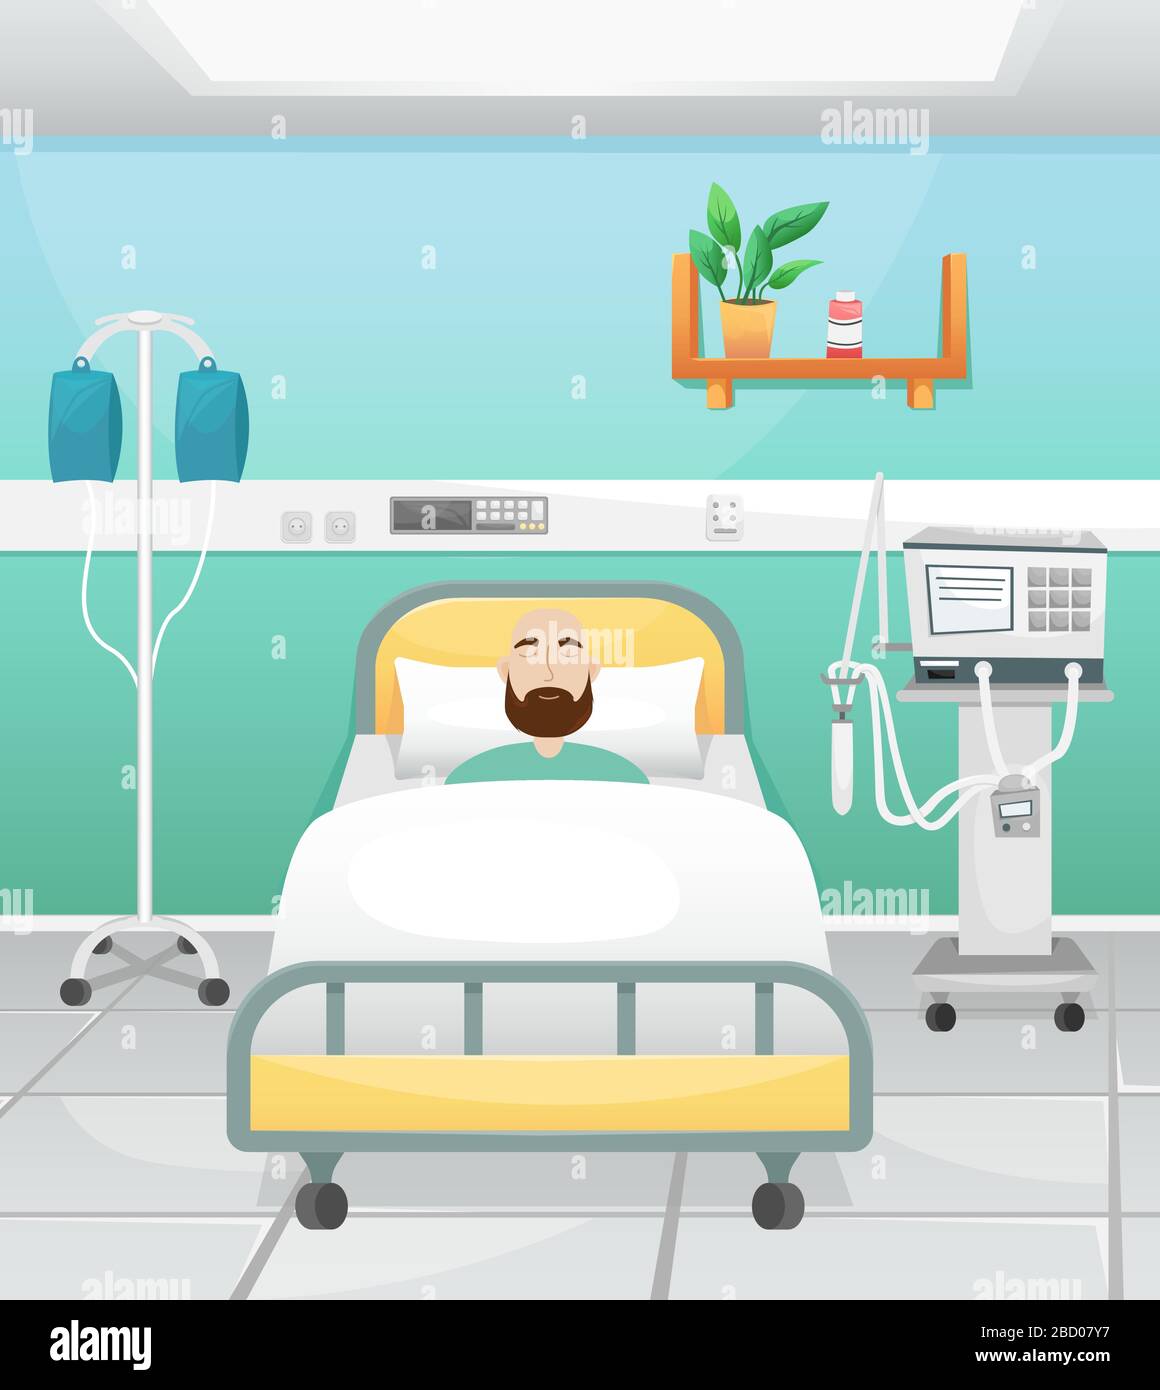 Une chambre d'hôpital avec un lit, une goutte d'eau et un ventilateur. Le patient est allongé dans le lit. Lutte contre le coronavirus dans les hôpitaux. Illustration de Vecteur